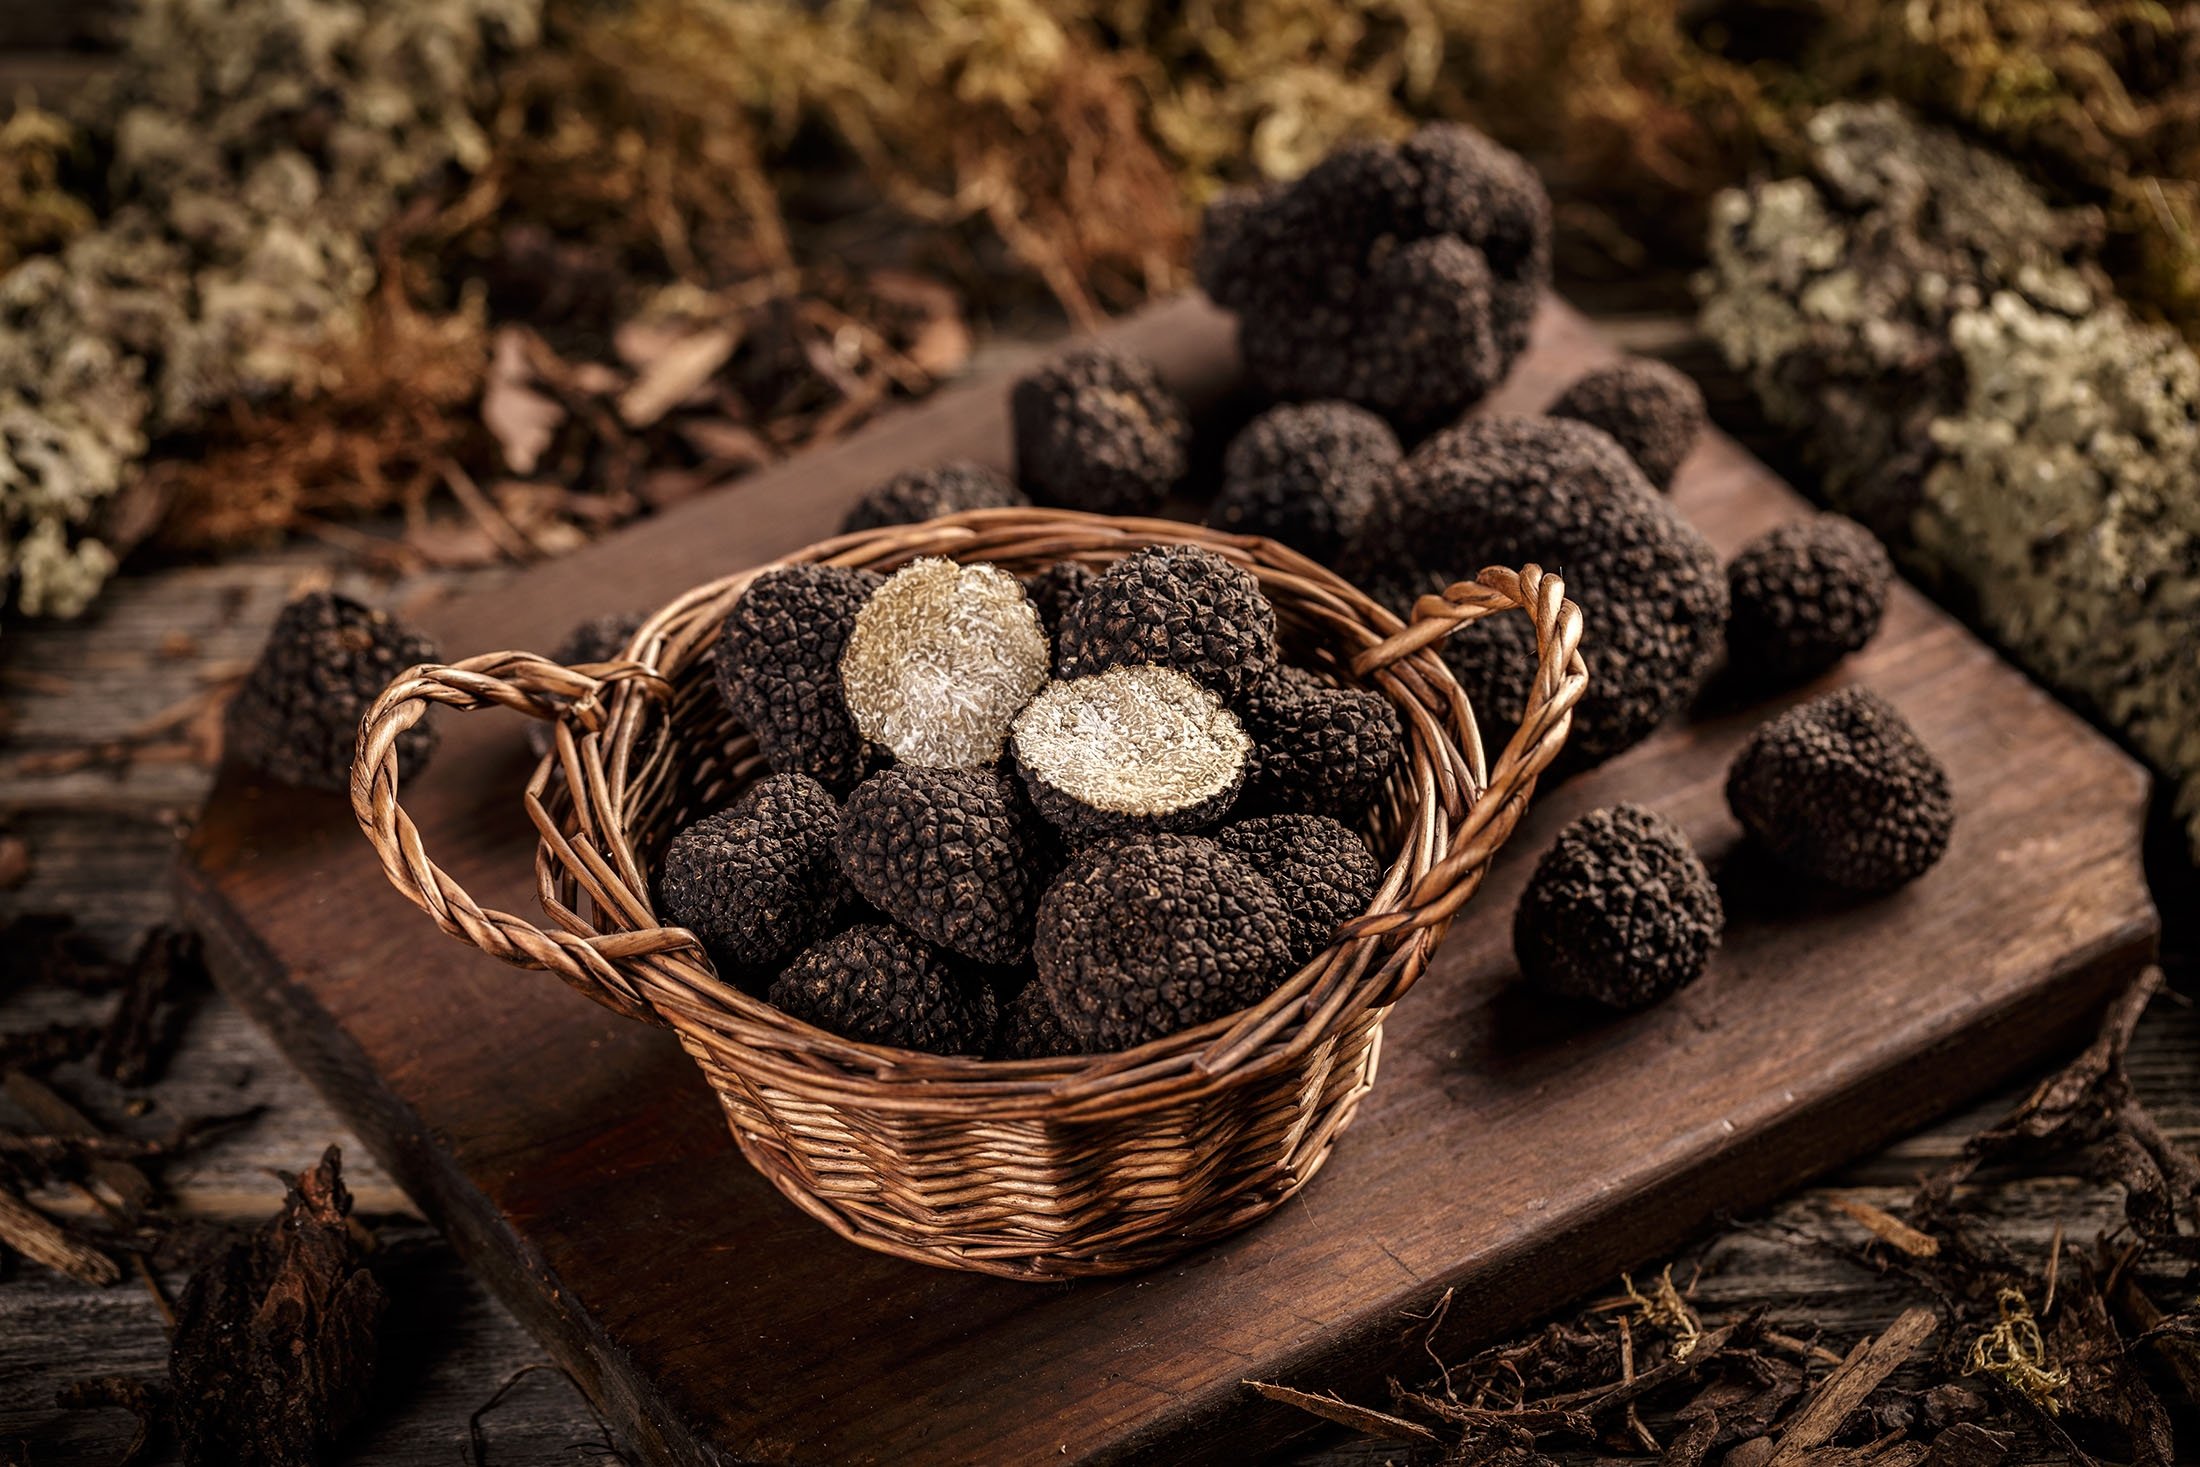 Siyah yer mantarı, soslar veya baharatlar dahil olmak üzere birçok yemekte ve özel tereyağında kullanılır.  (Shutterstock Fotoğrafı)